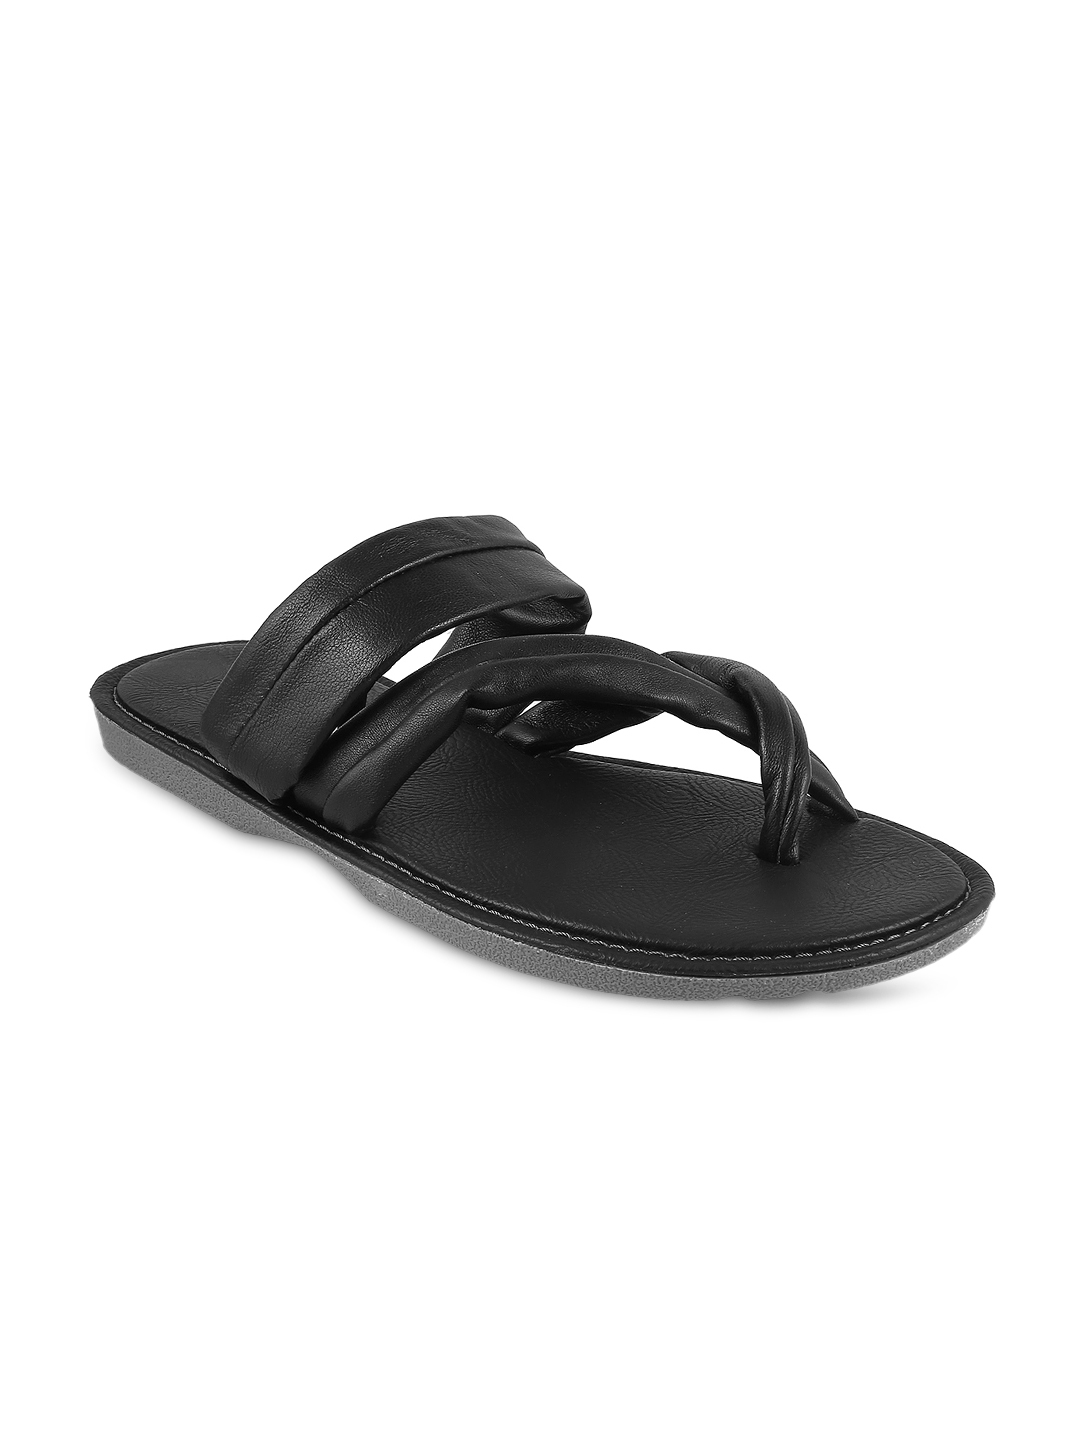 Buy Mochi Men Black Sandals - Sandals for Men 1591956 | Myntra